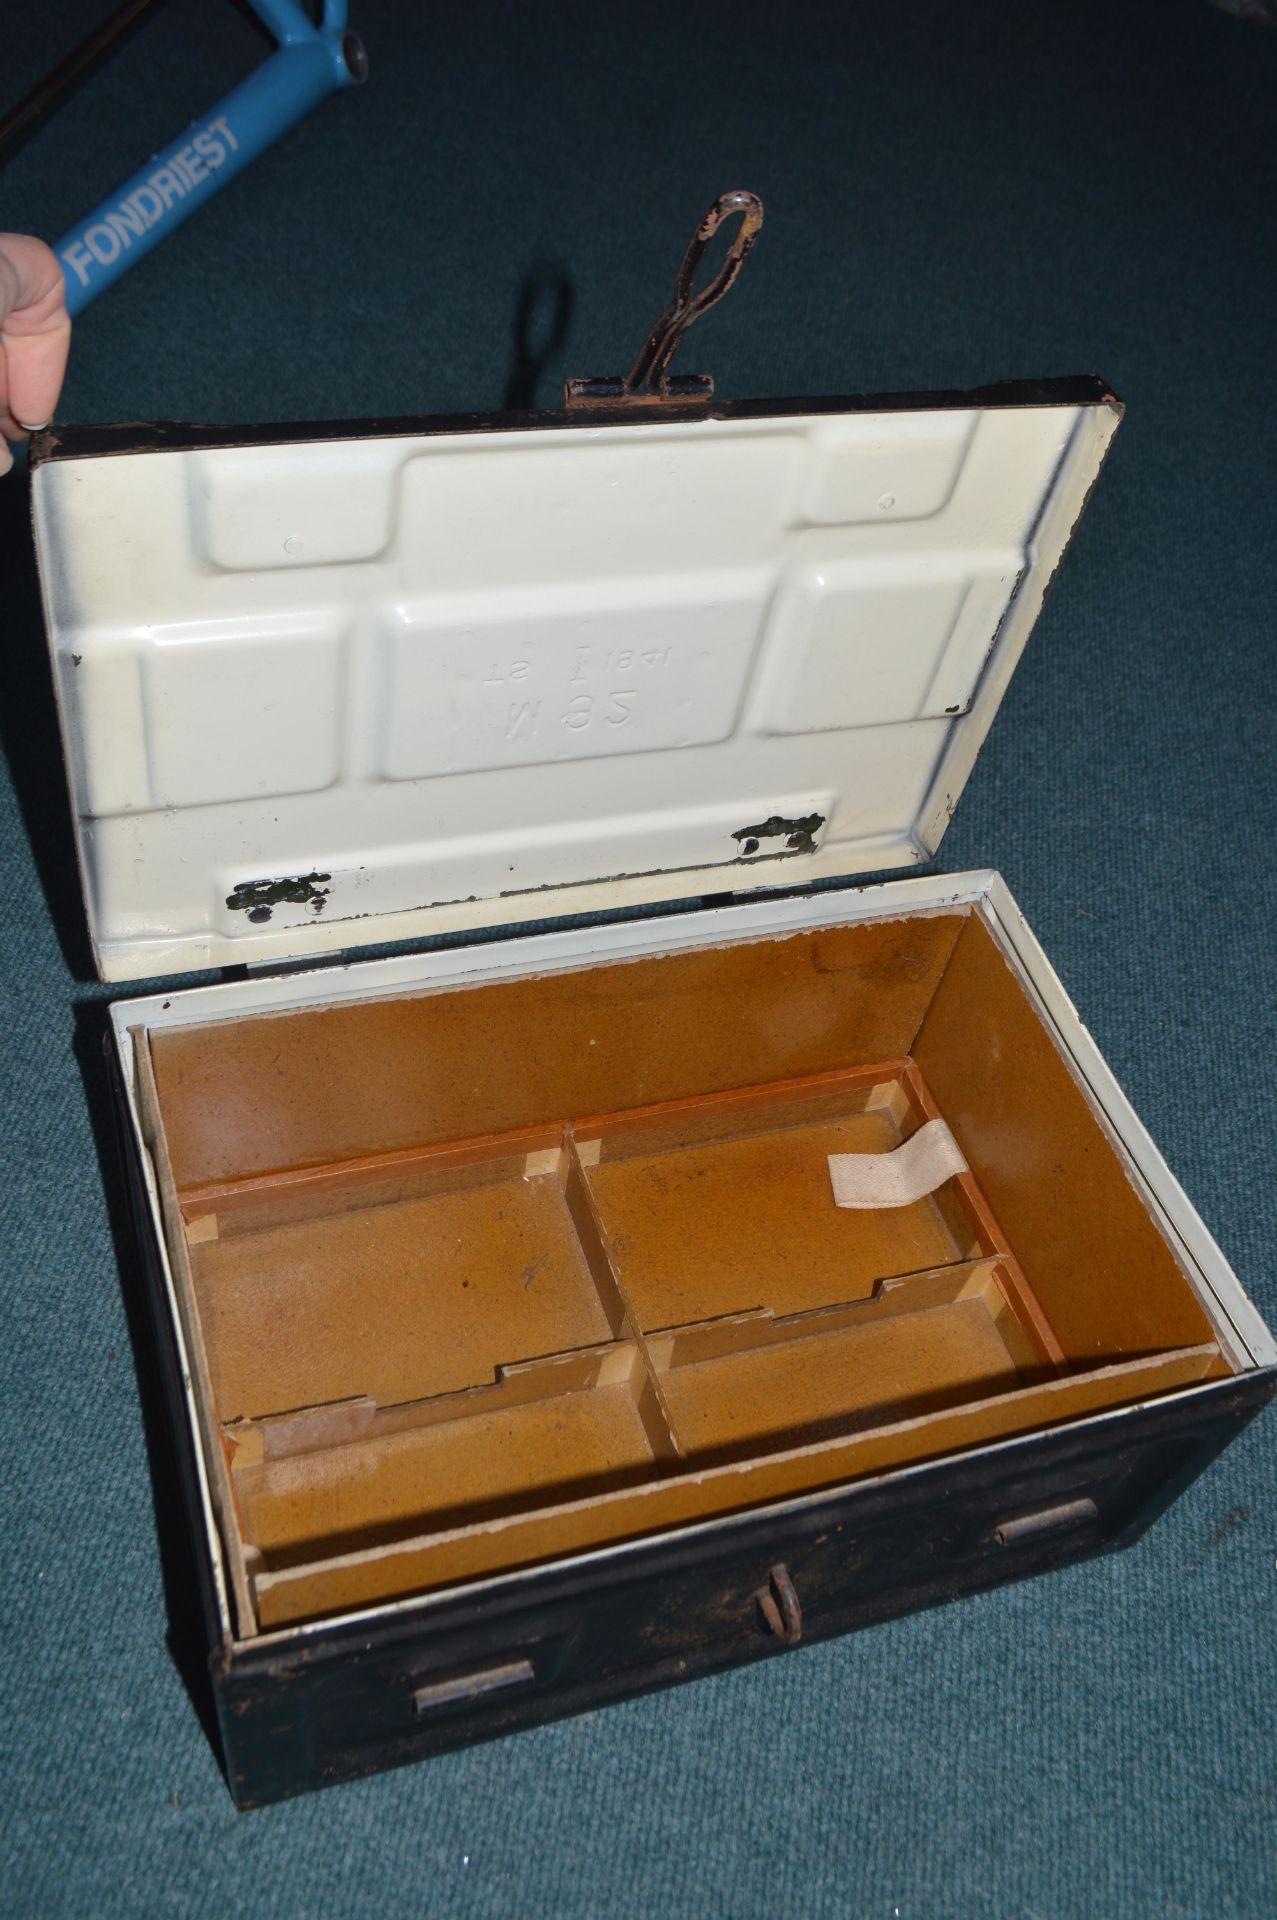 1941 Wartime Ammunition Box - Image 2 of 2